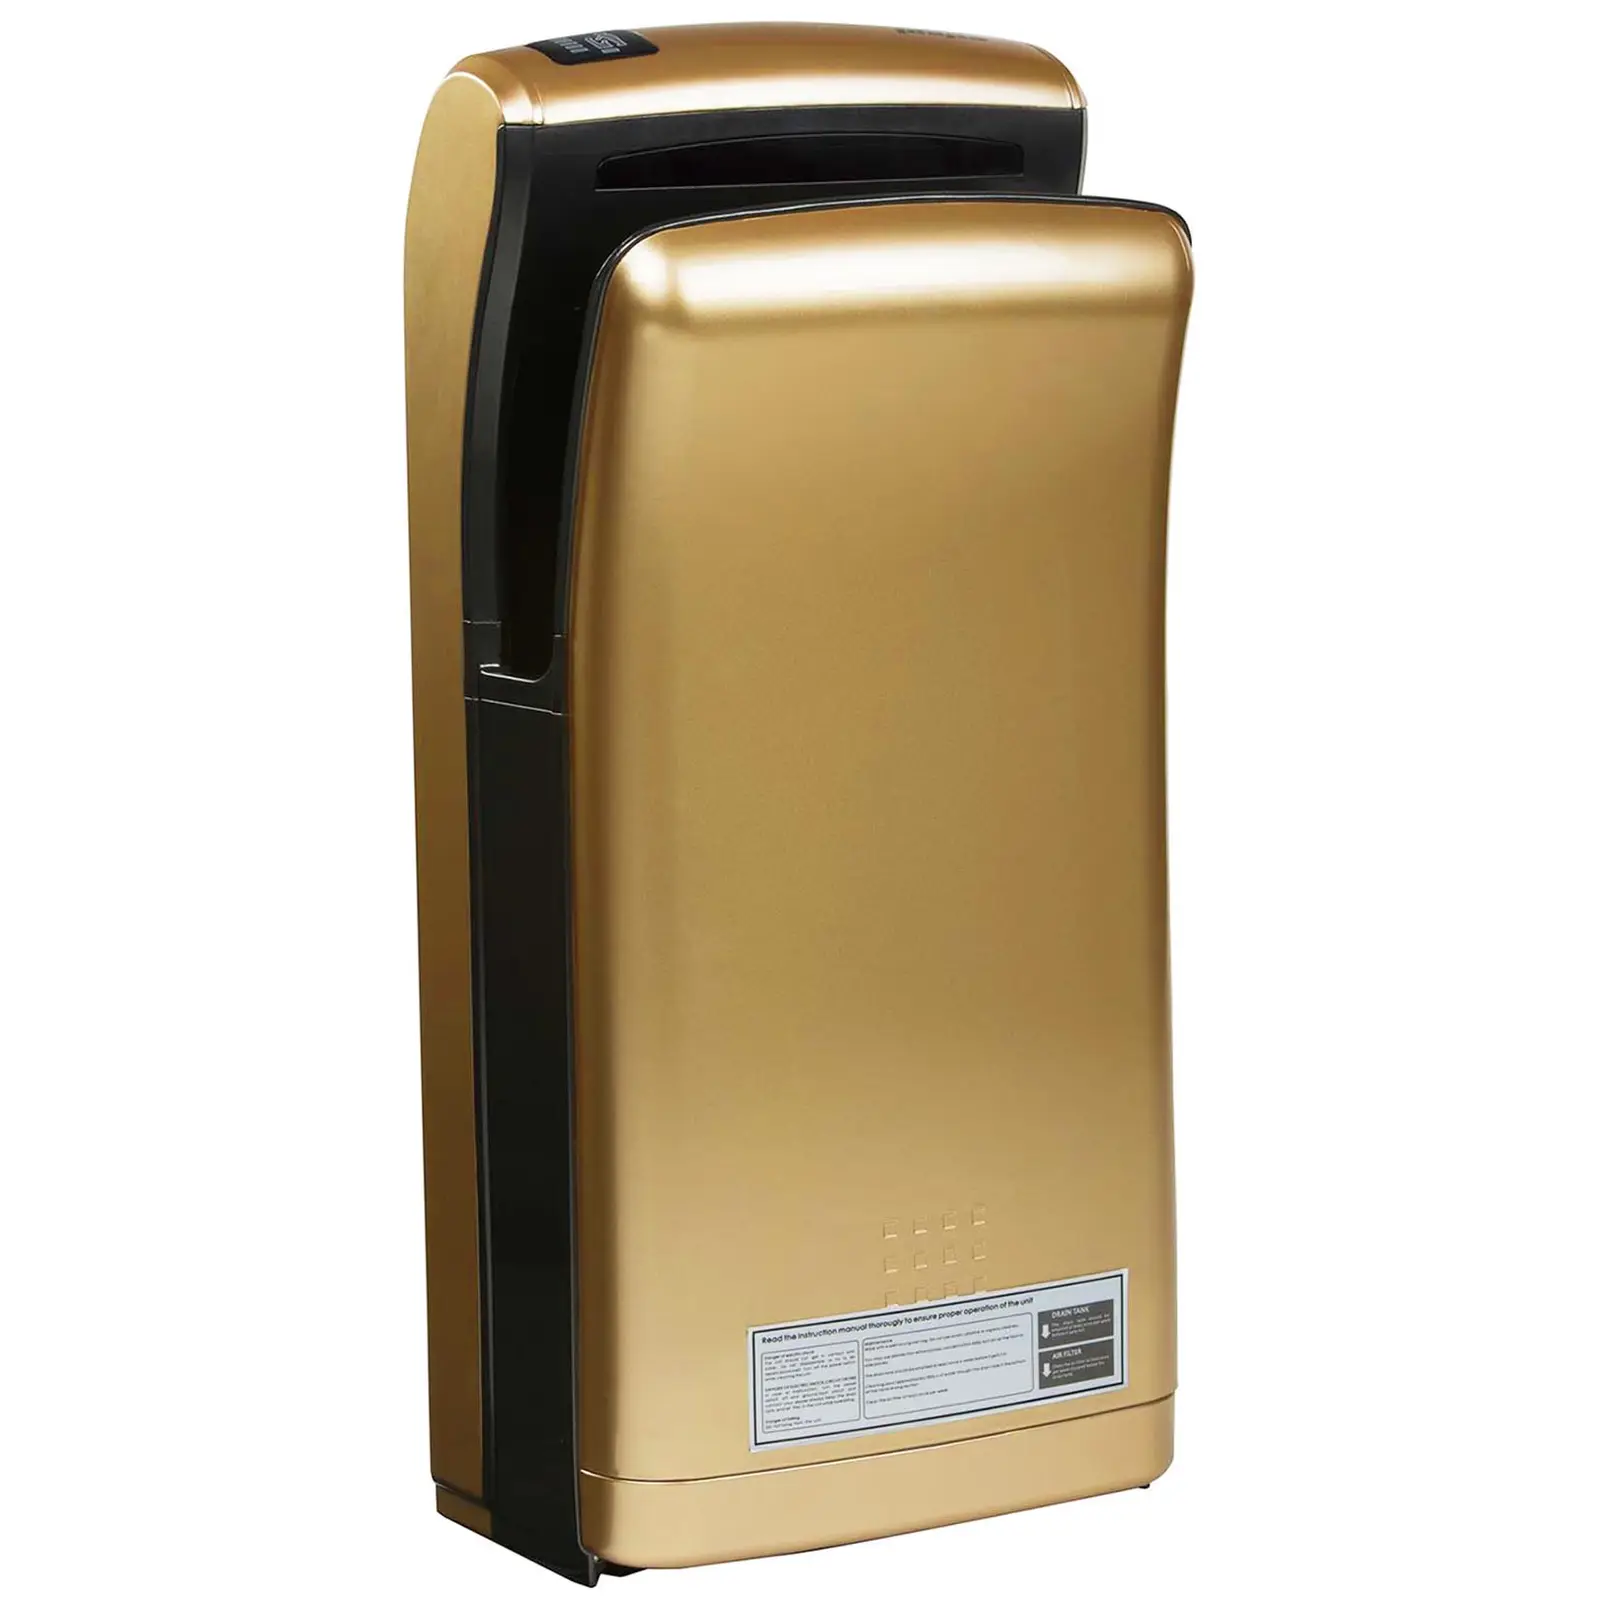 Secador de mãos vertical - 1200 W - Dourado